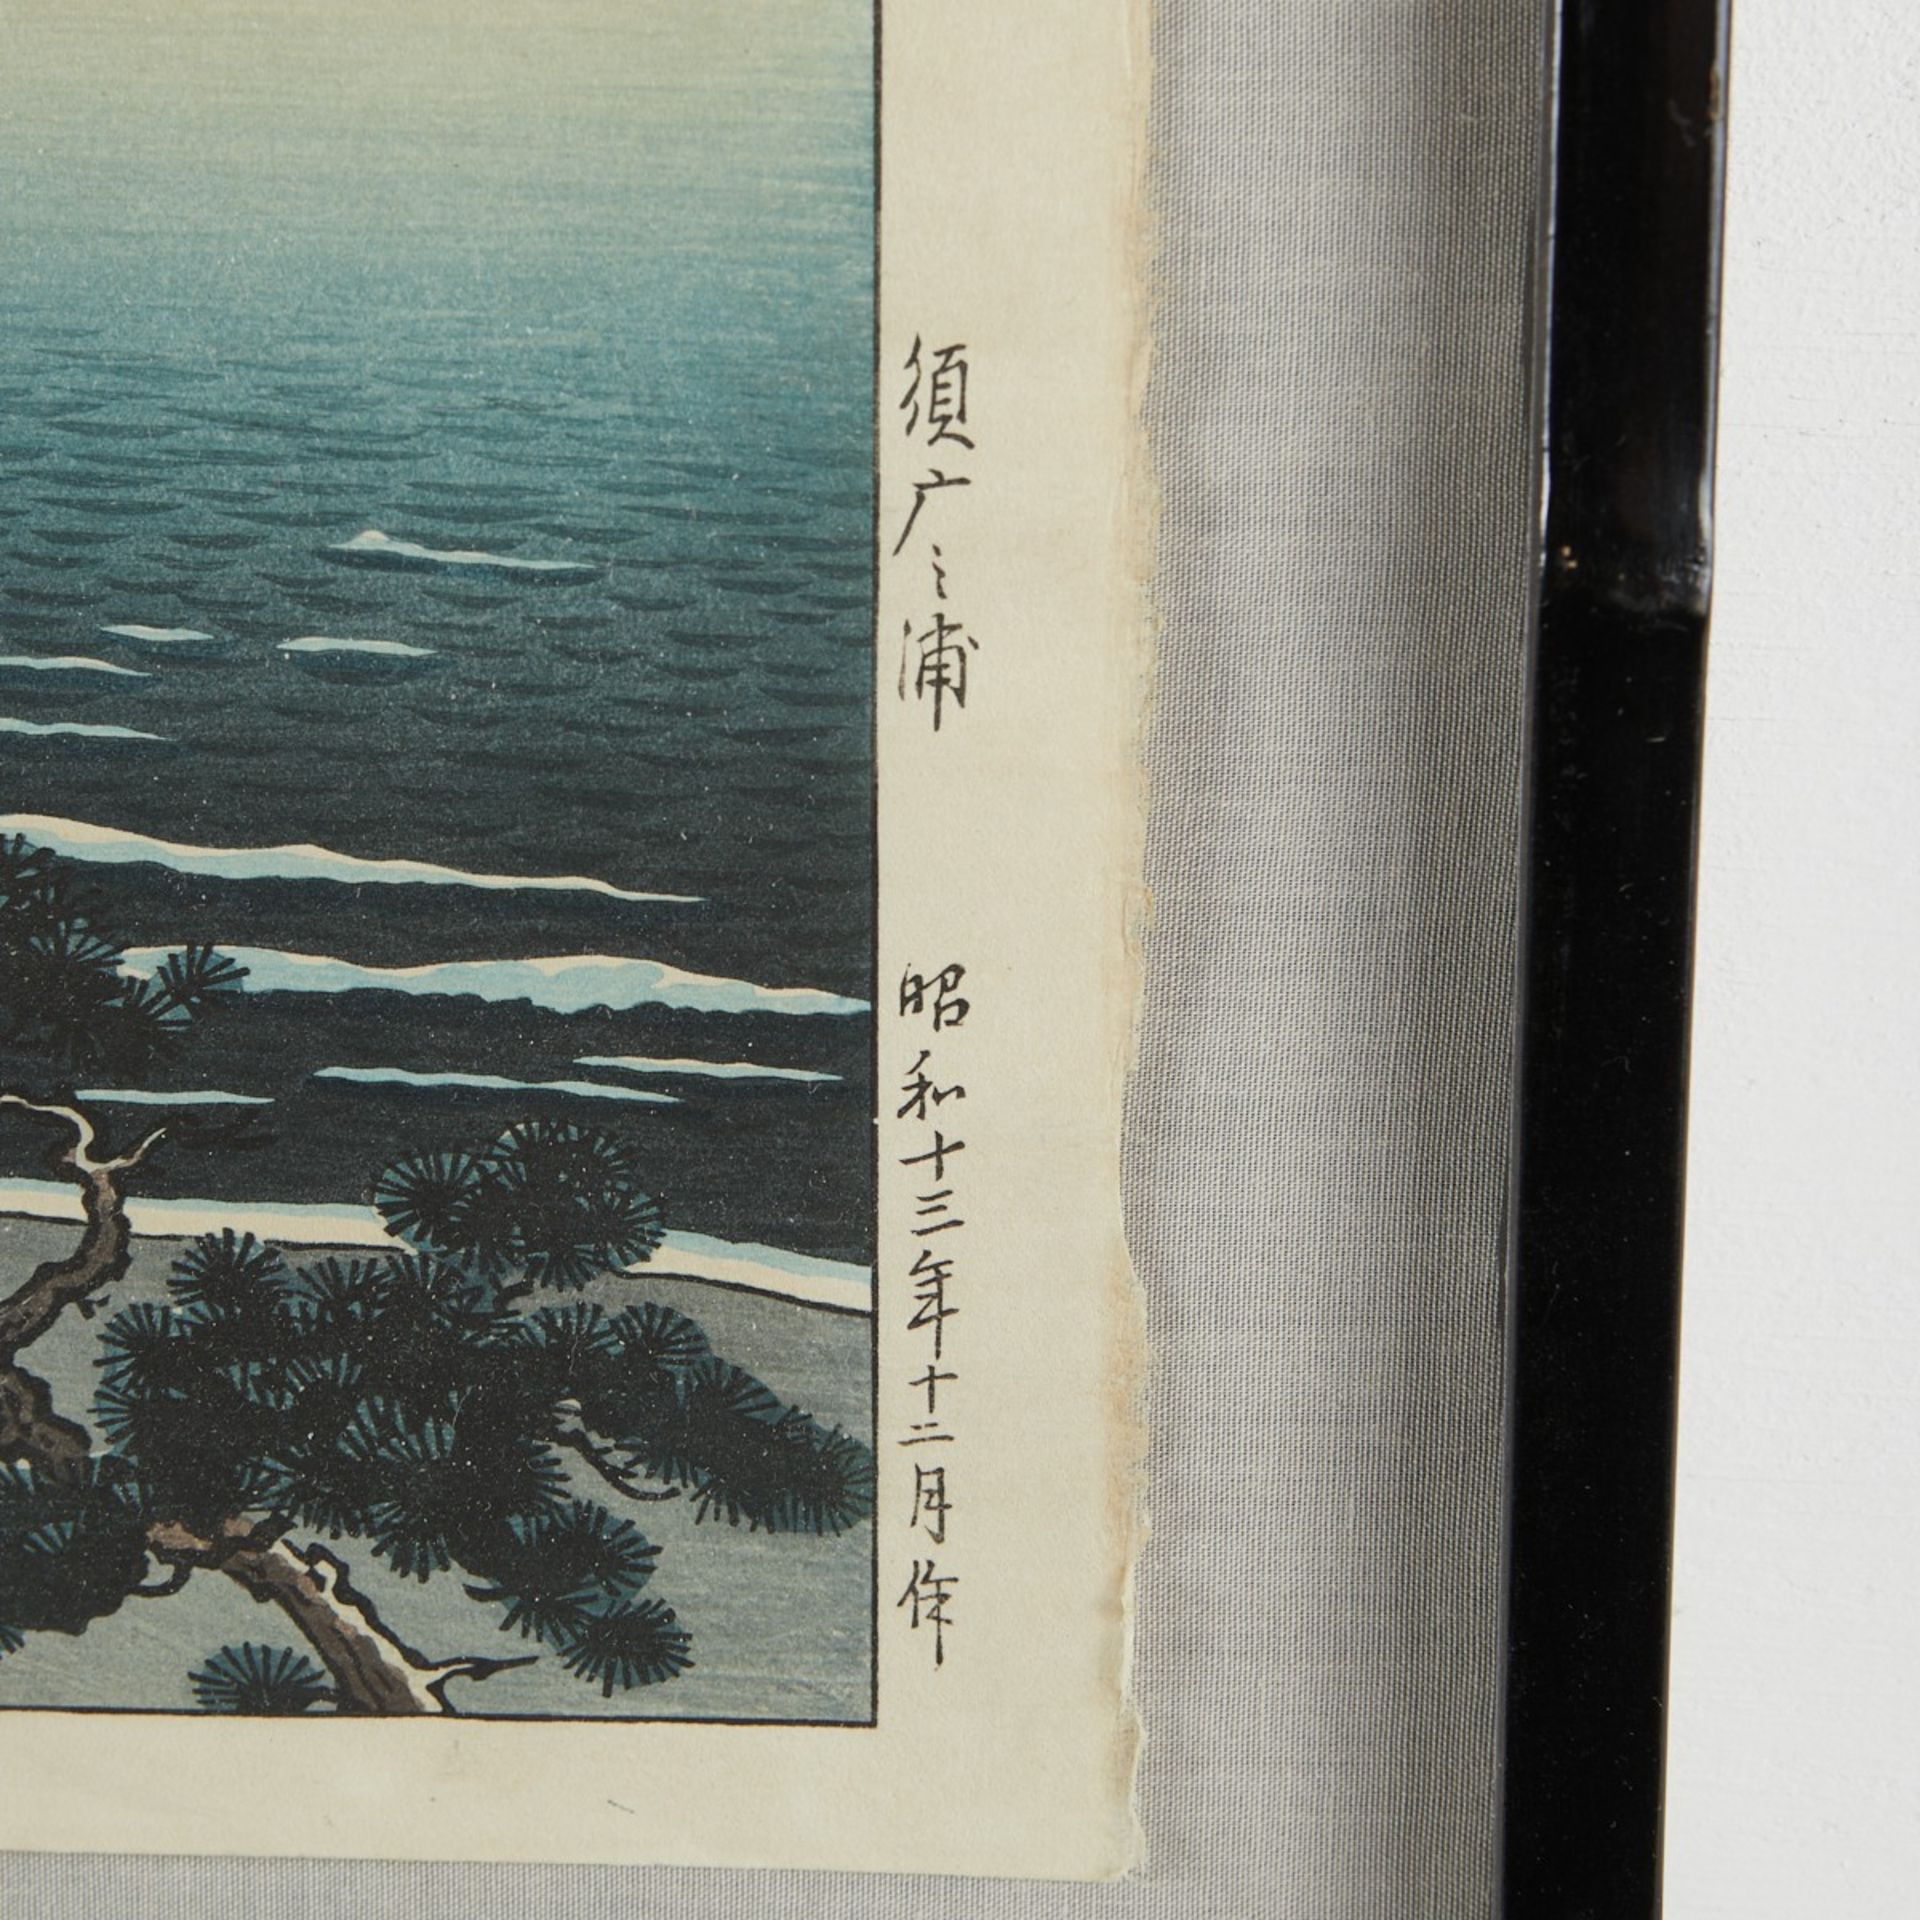 Tsuchiya Koitsu "Suma Beach" Shin-hanga Print - Bild 4 aus 4